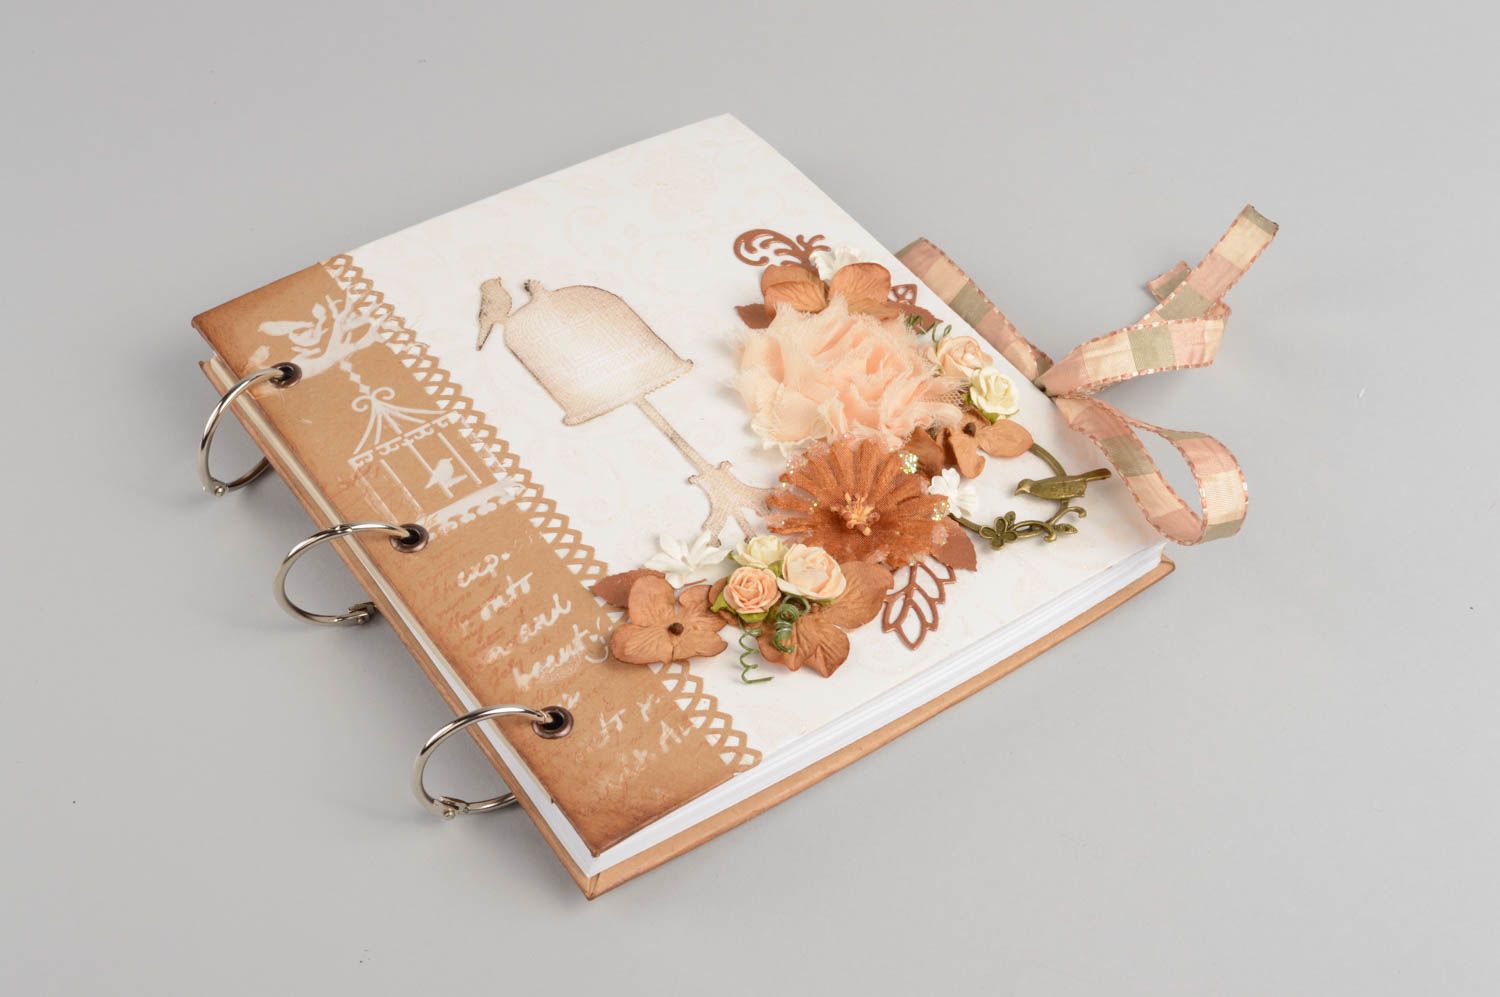 Книга пожеланий на свадьбу из картона красивая на люверсах небольшая хэнд мейд фото 2